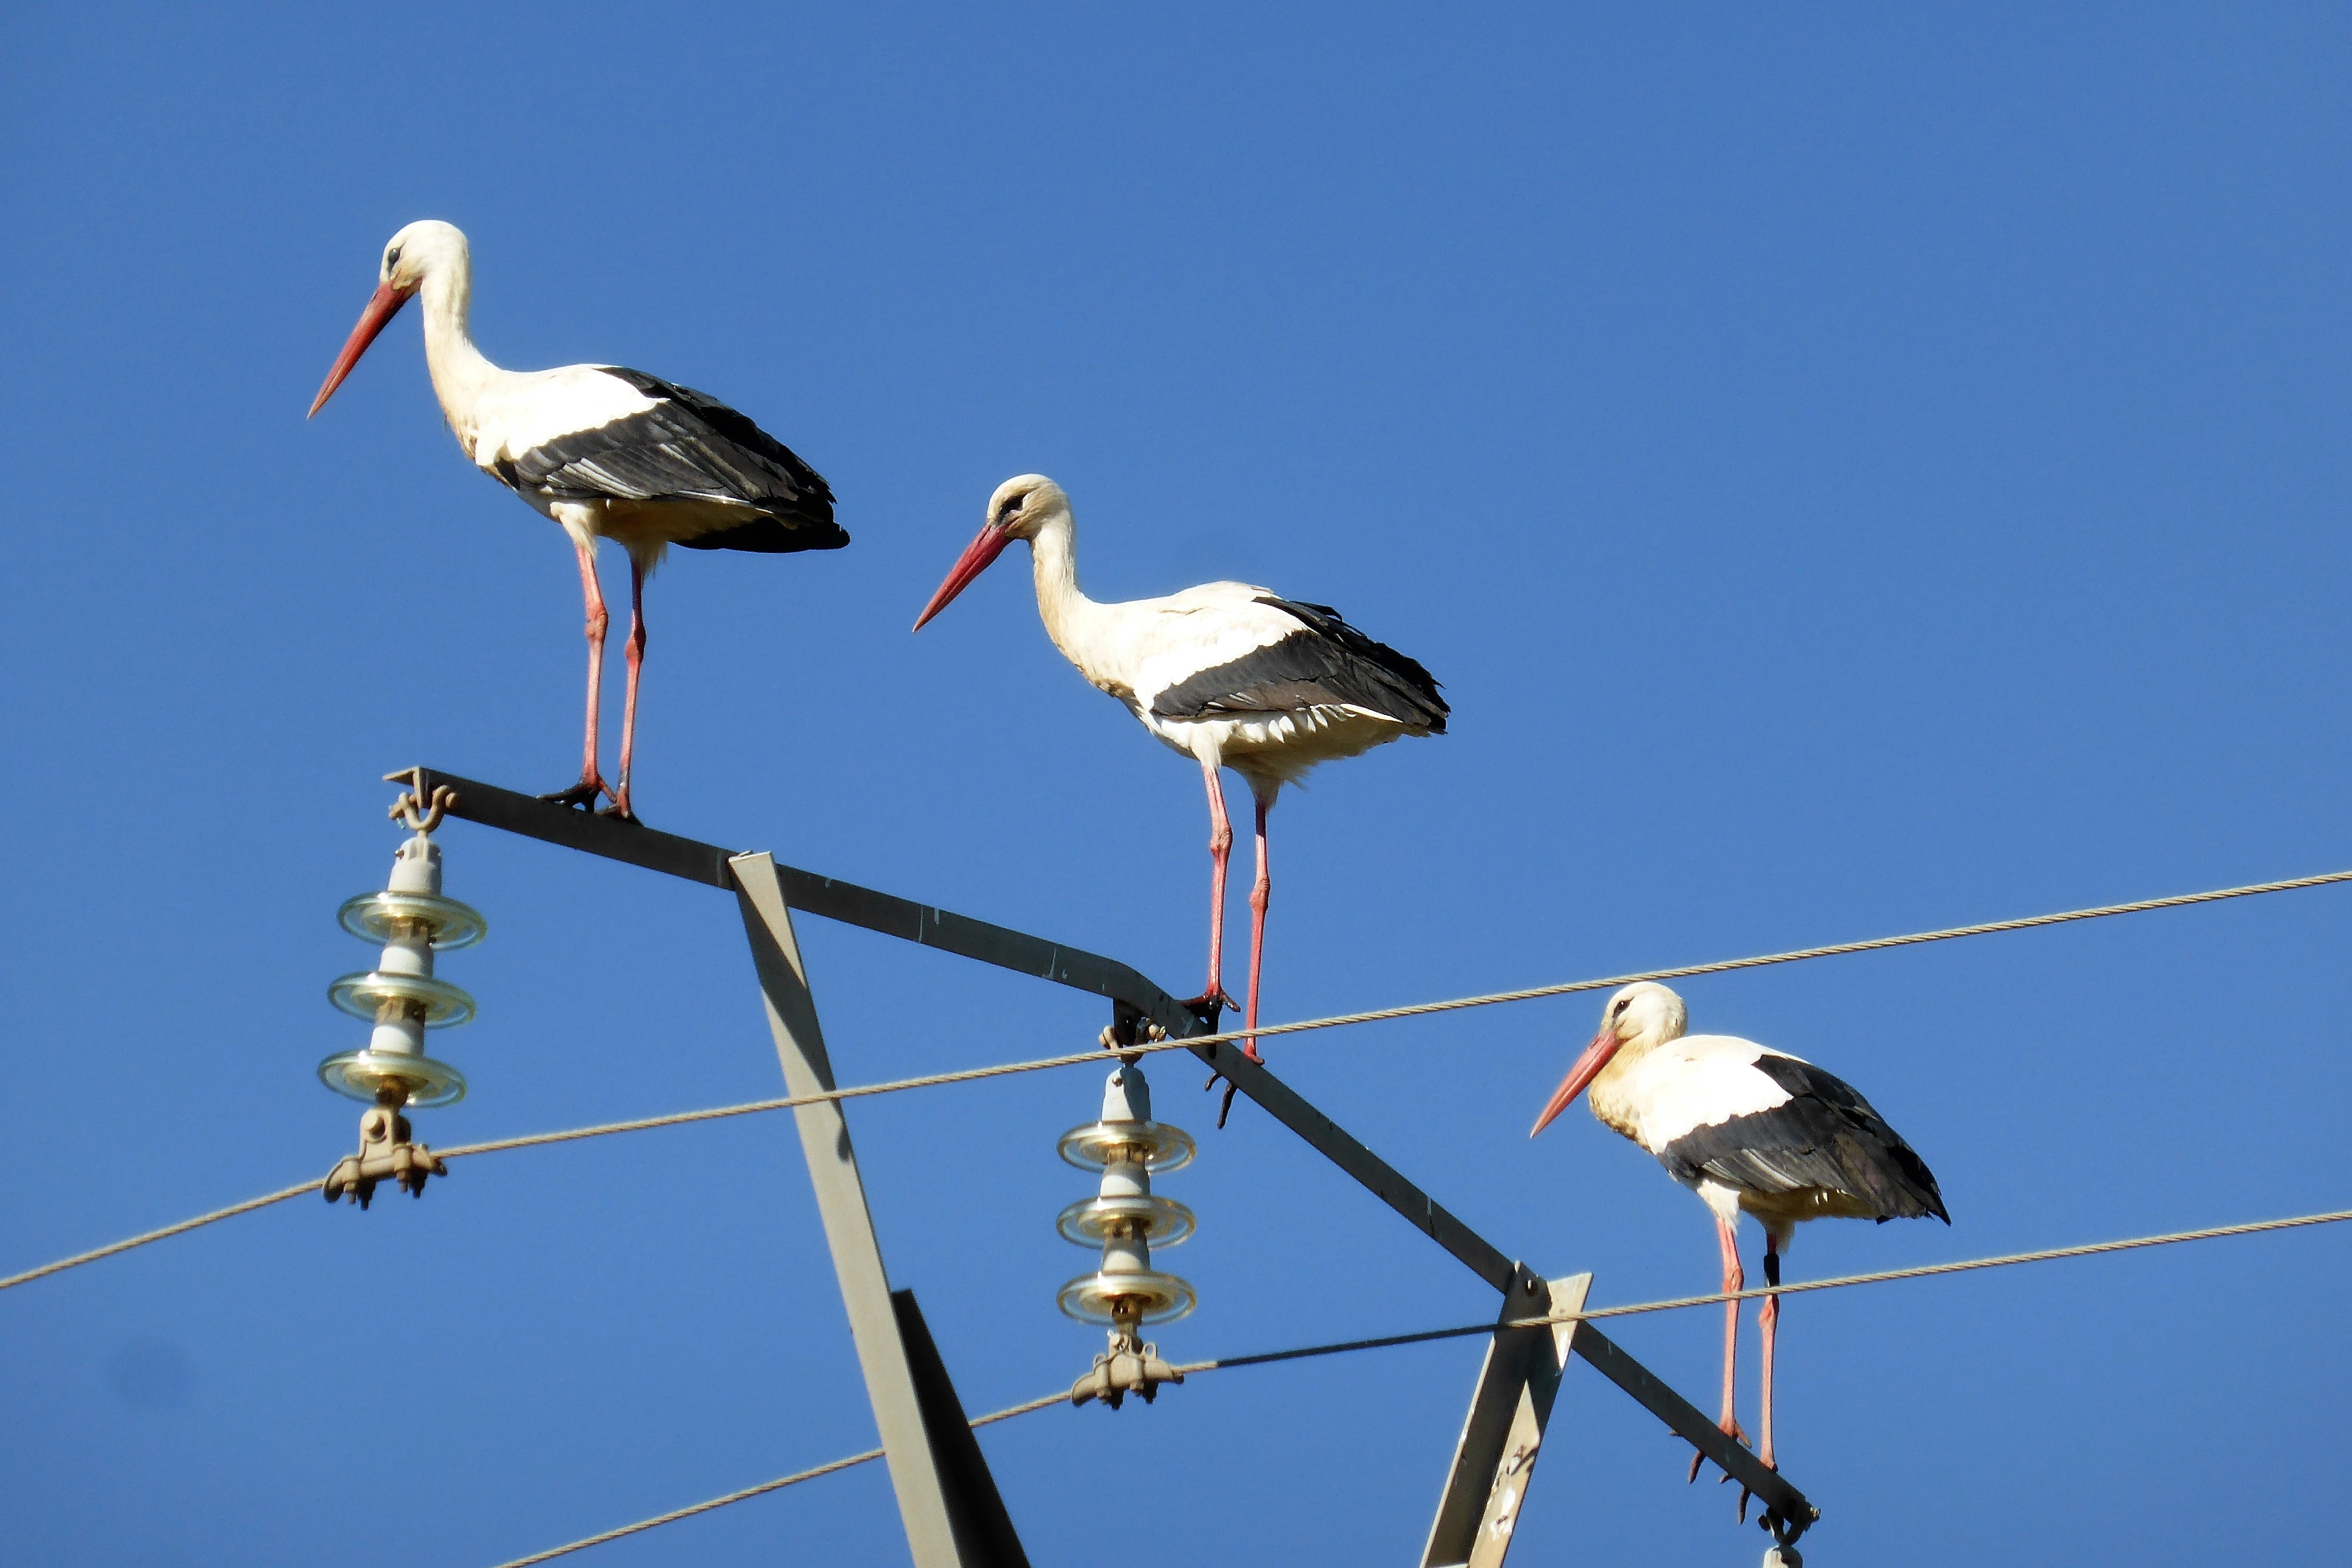 3 white and black storks